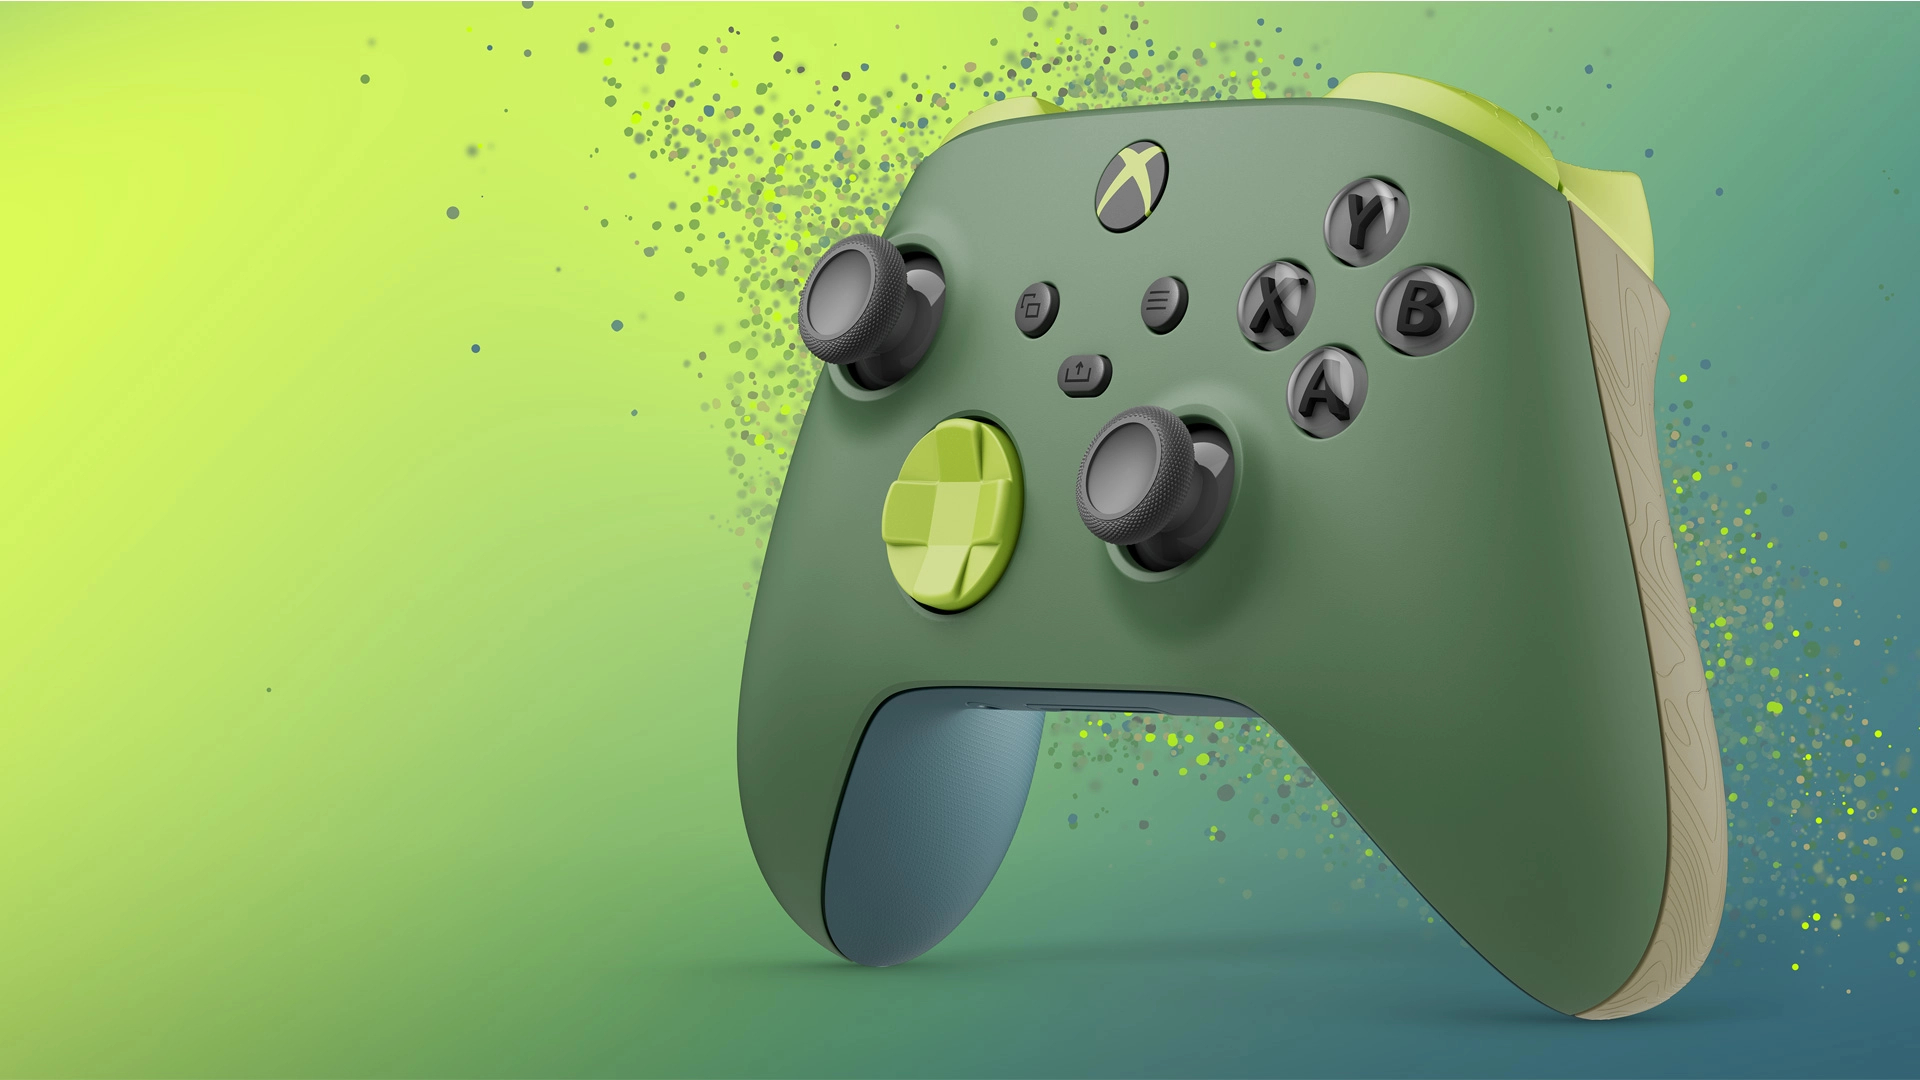 Официальный подкаст Xbox обсудит будущее бренда 15 февраля.